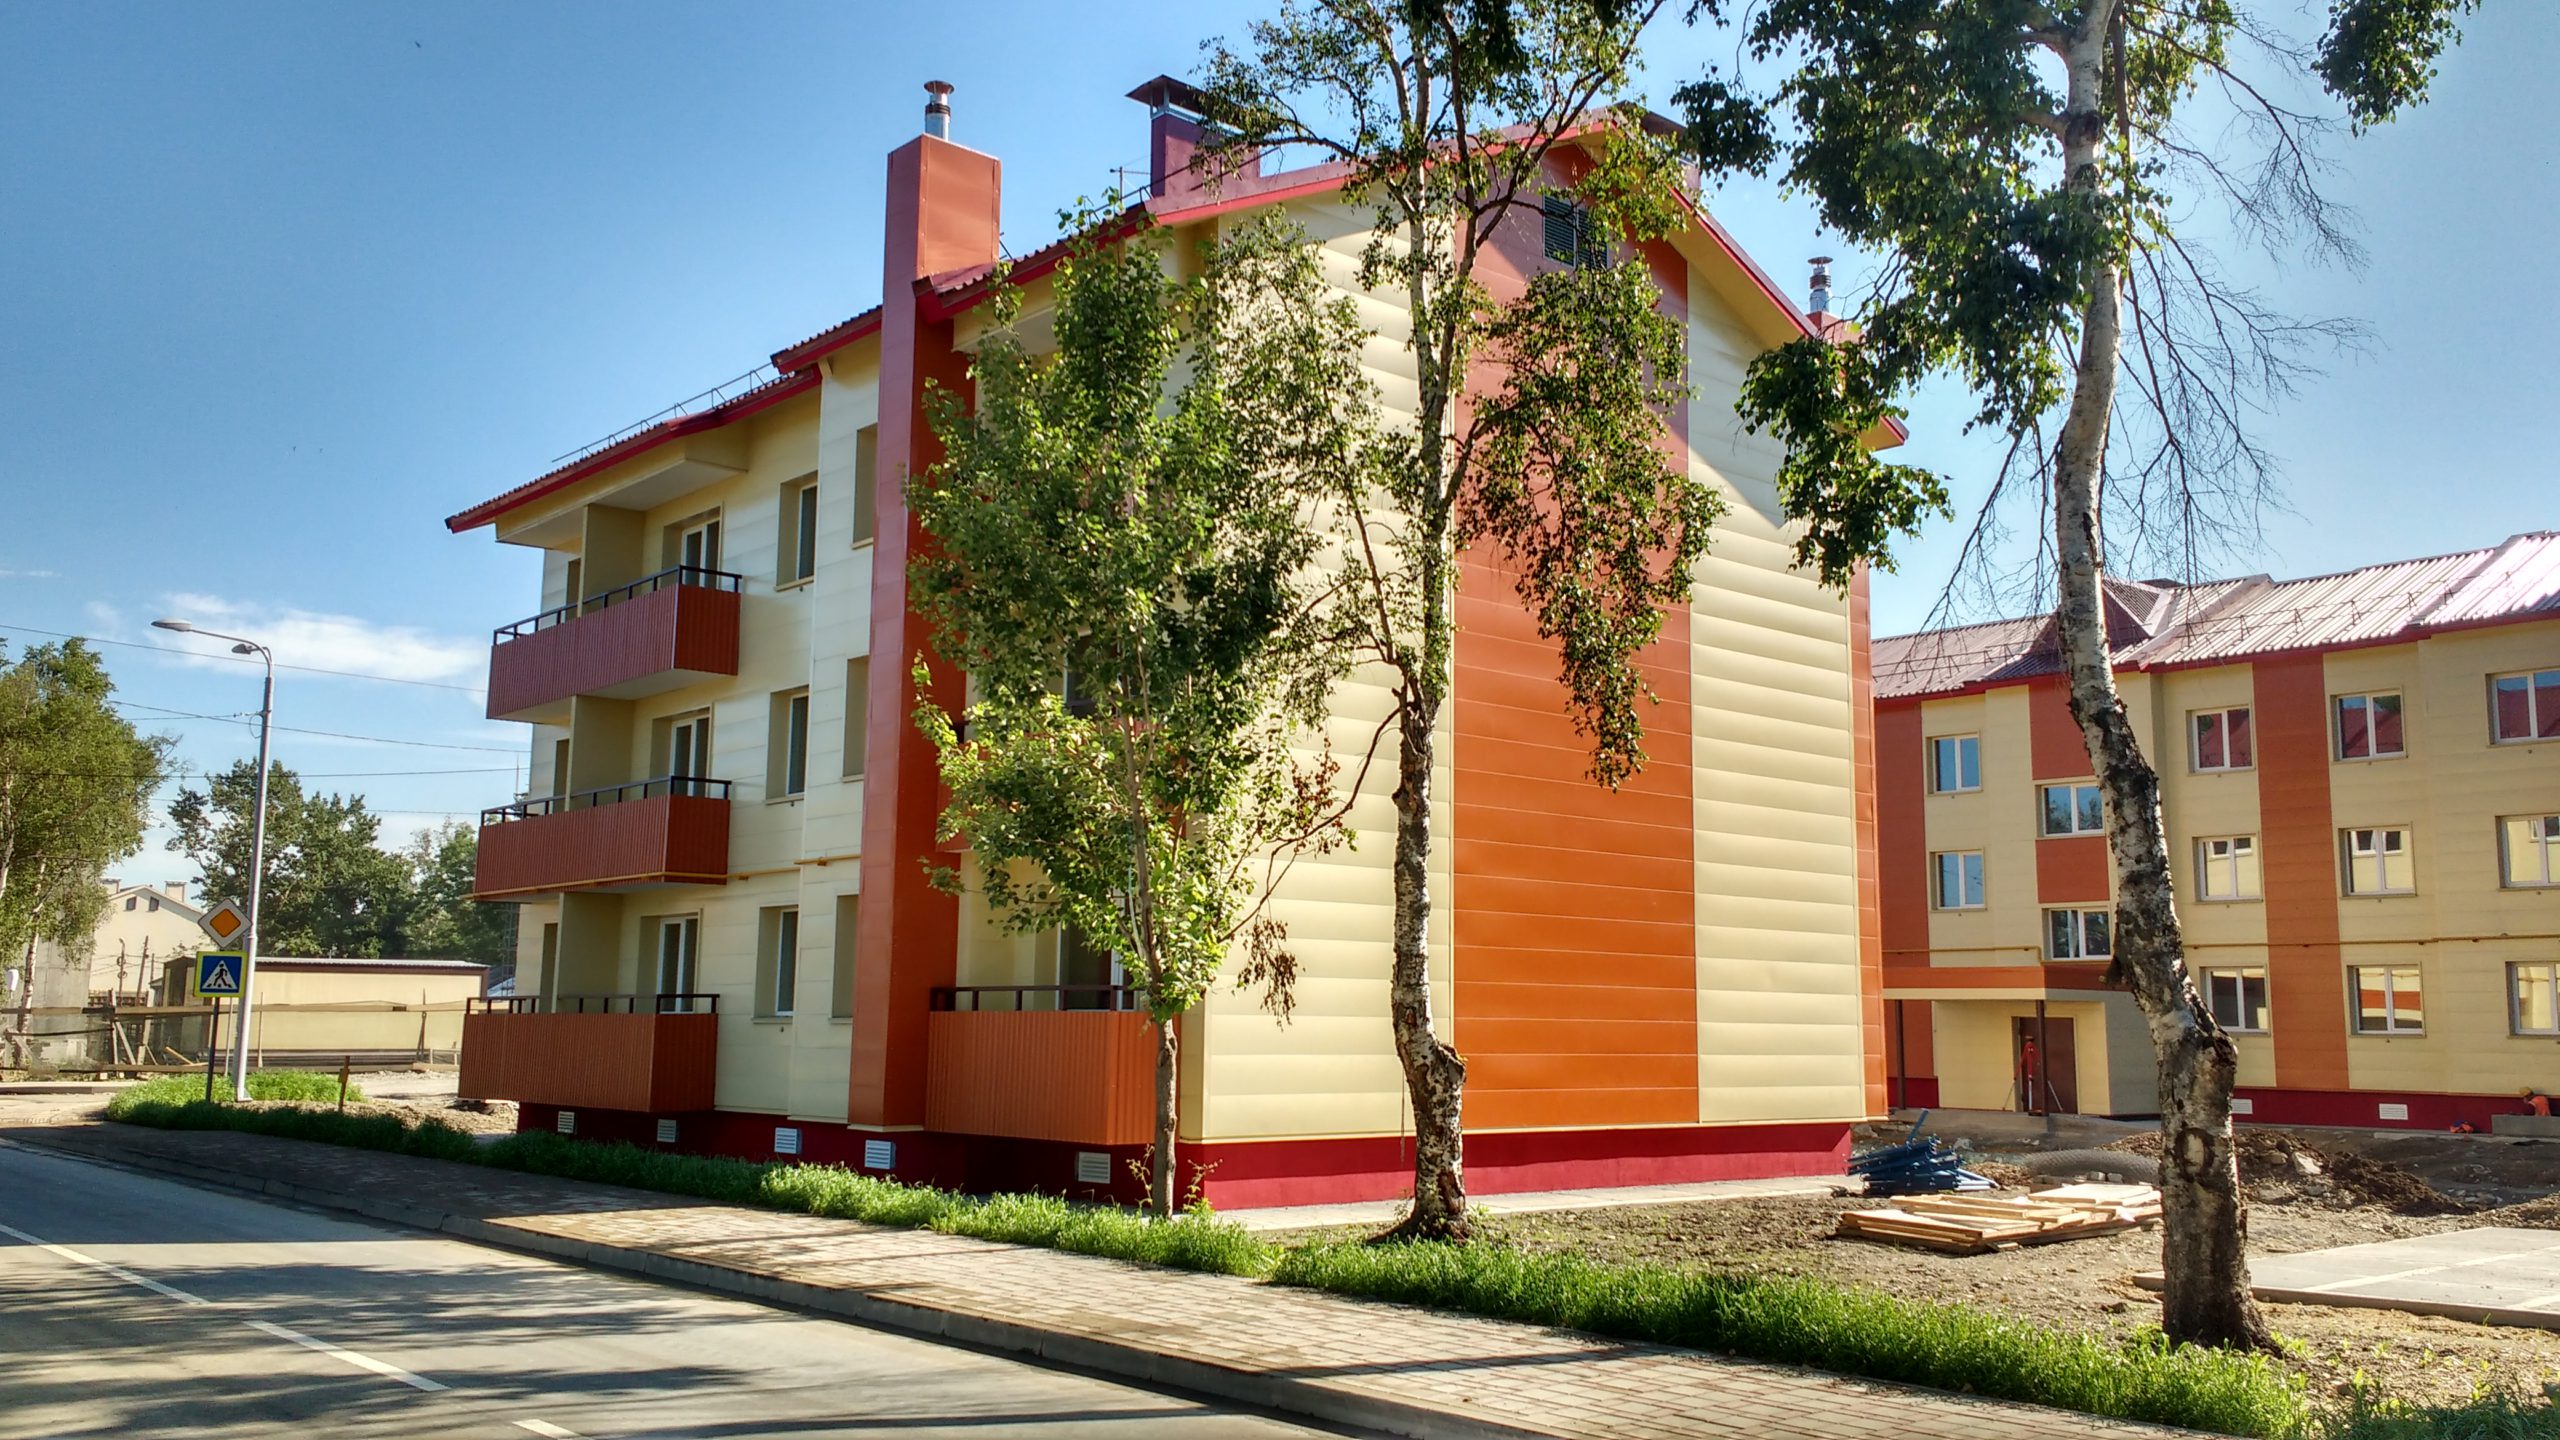 Строительство малоэтажных жилых домов в г.Южно-Сахалинске (25 мк, 3 очередь)